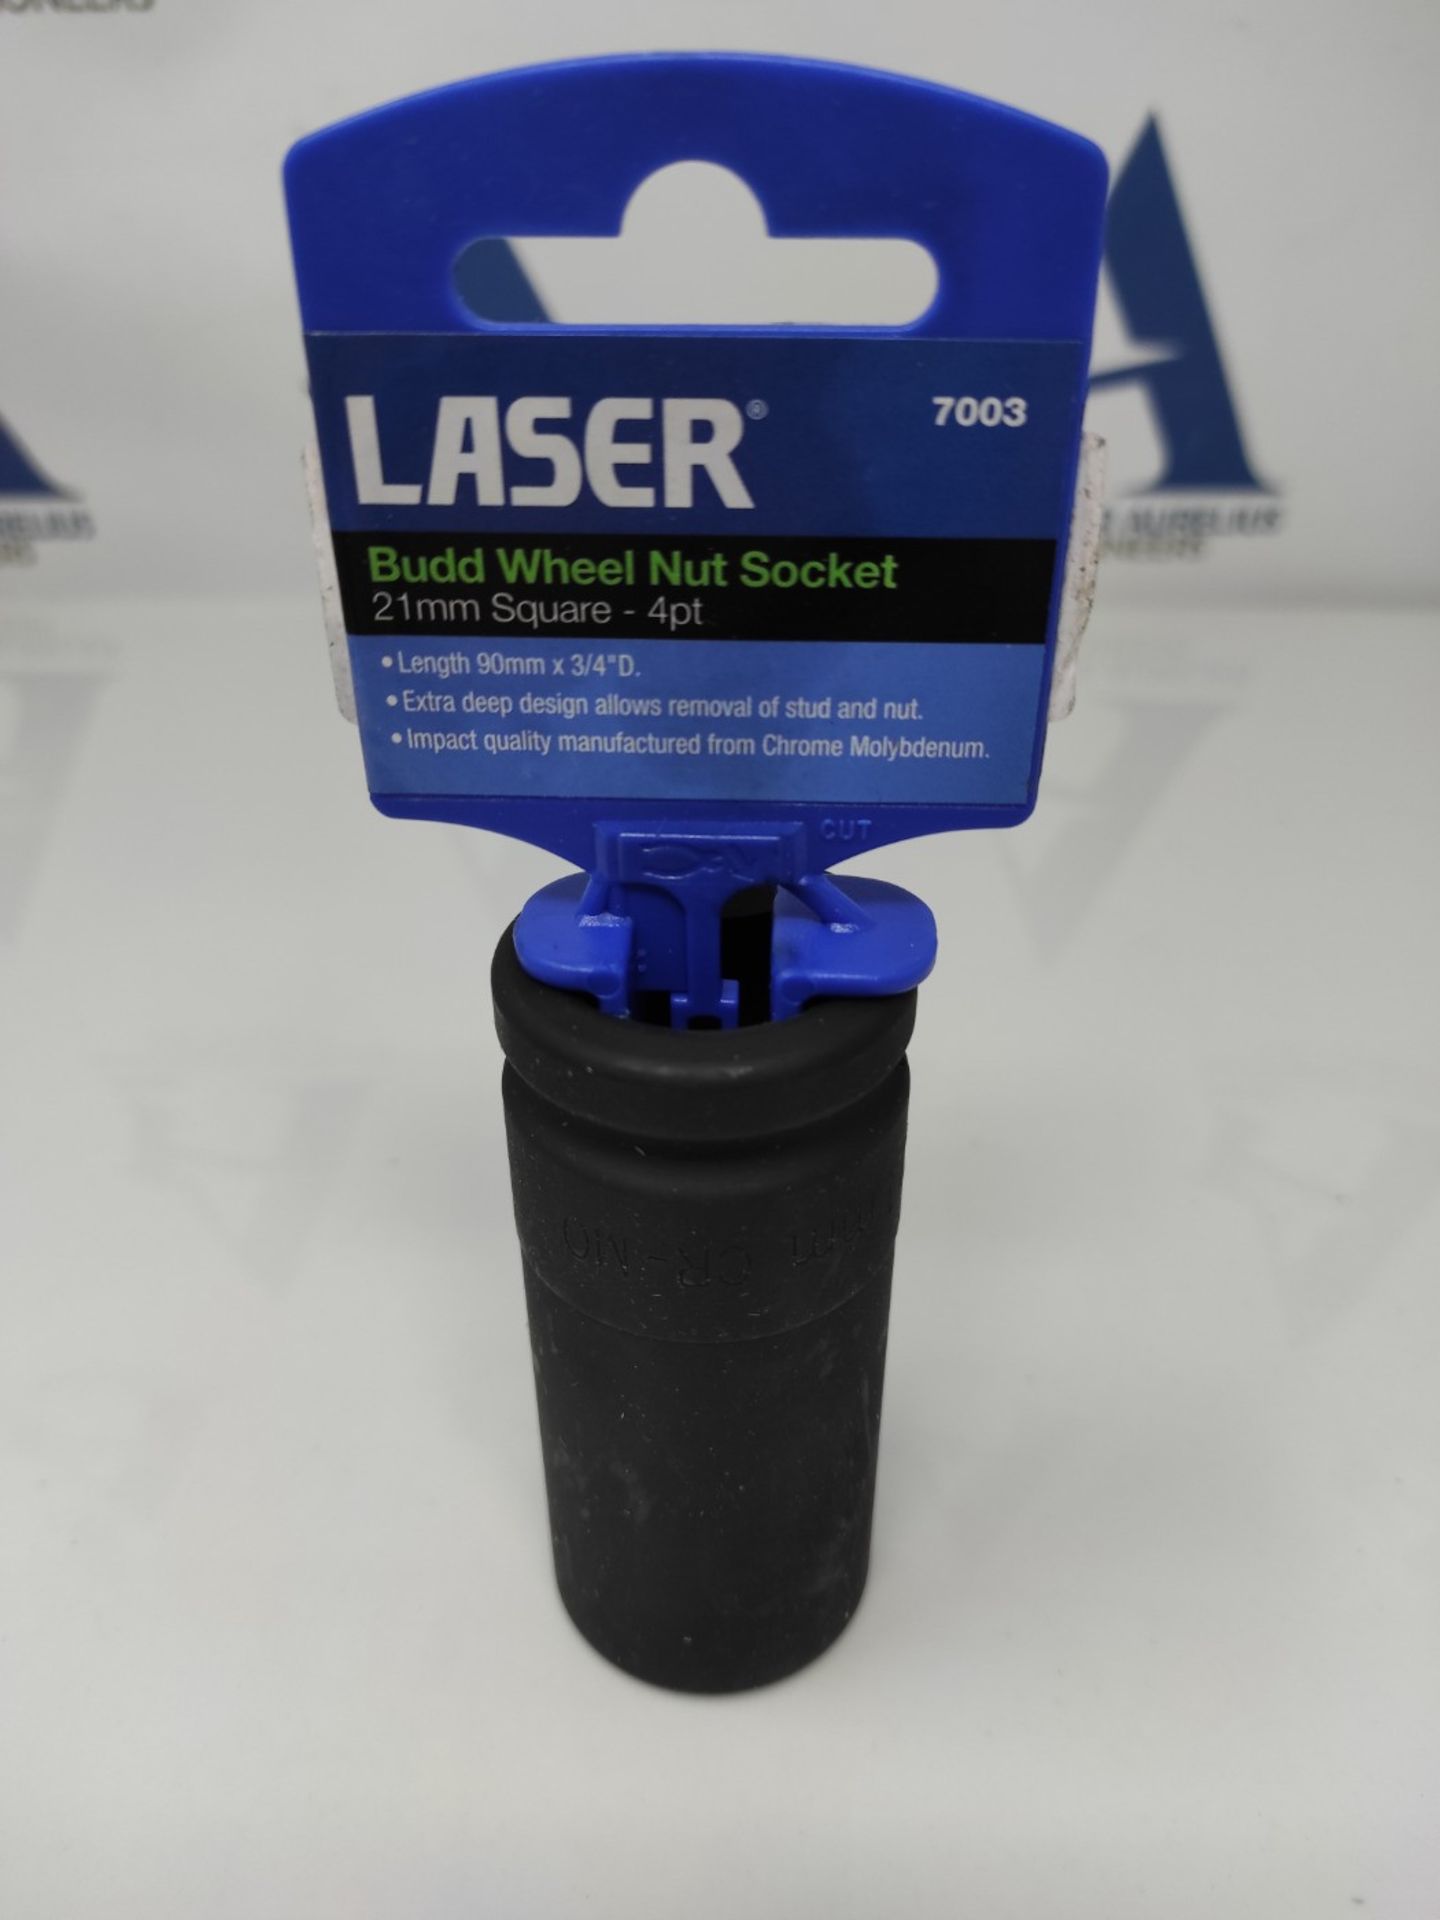 Laser 7003 Budd Wheel Nut Socket 3/4"D 21mm - Bild 2 aus 2